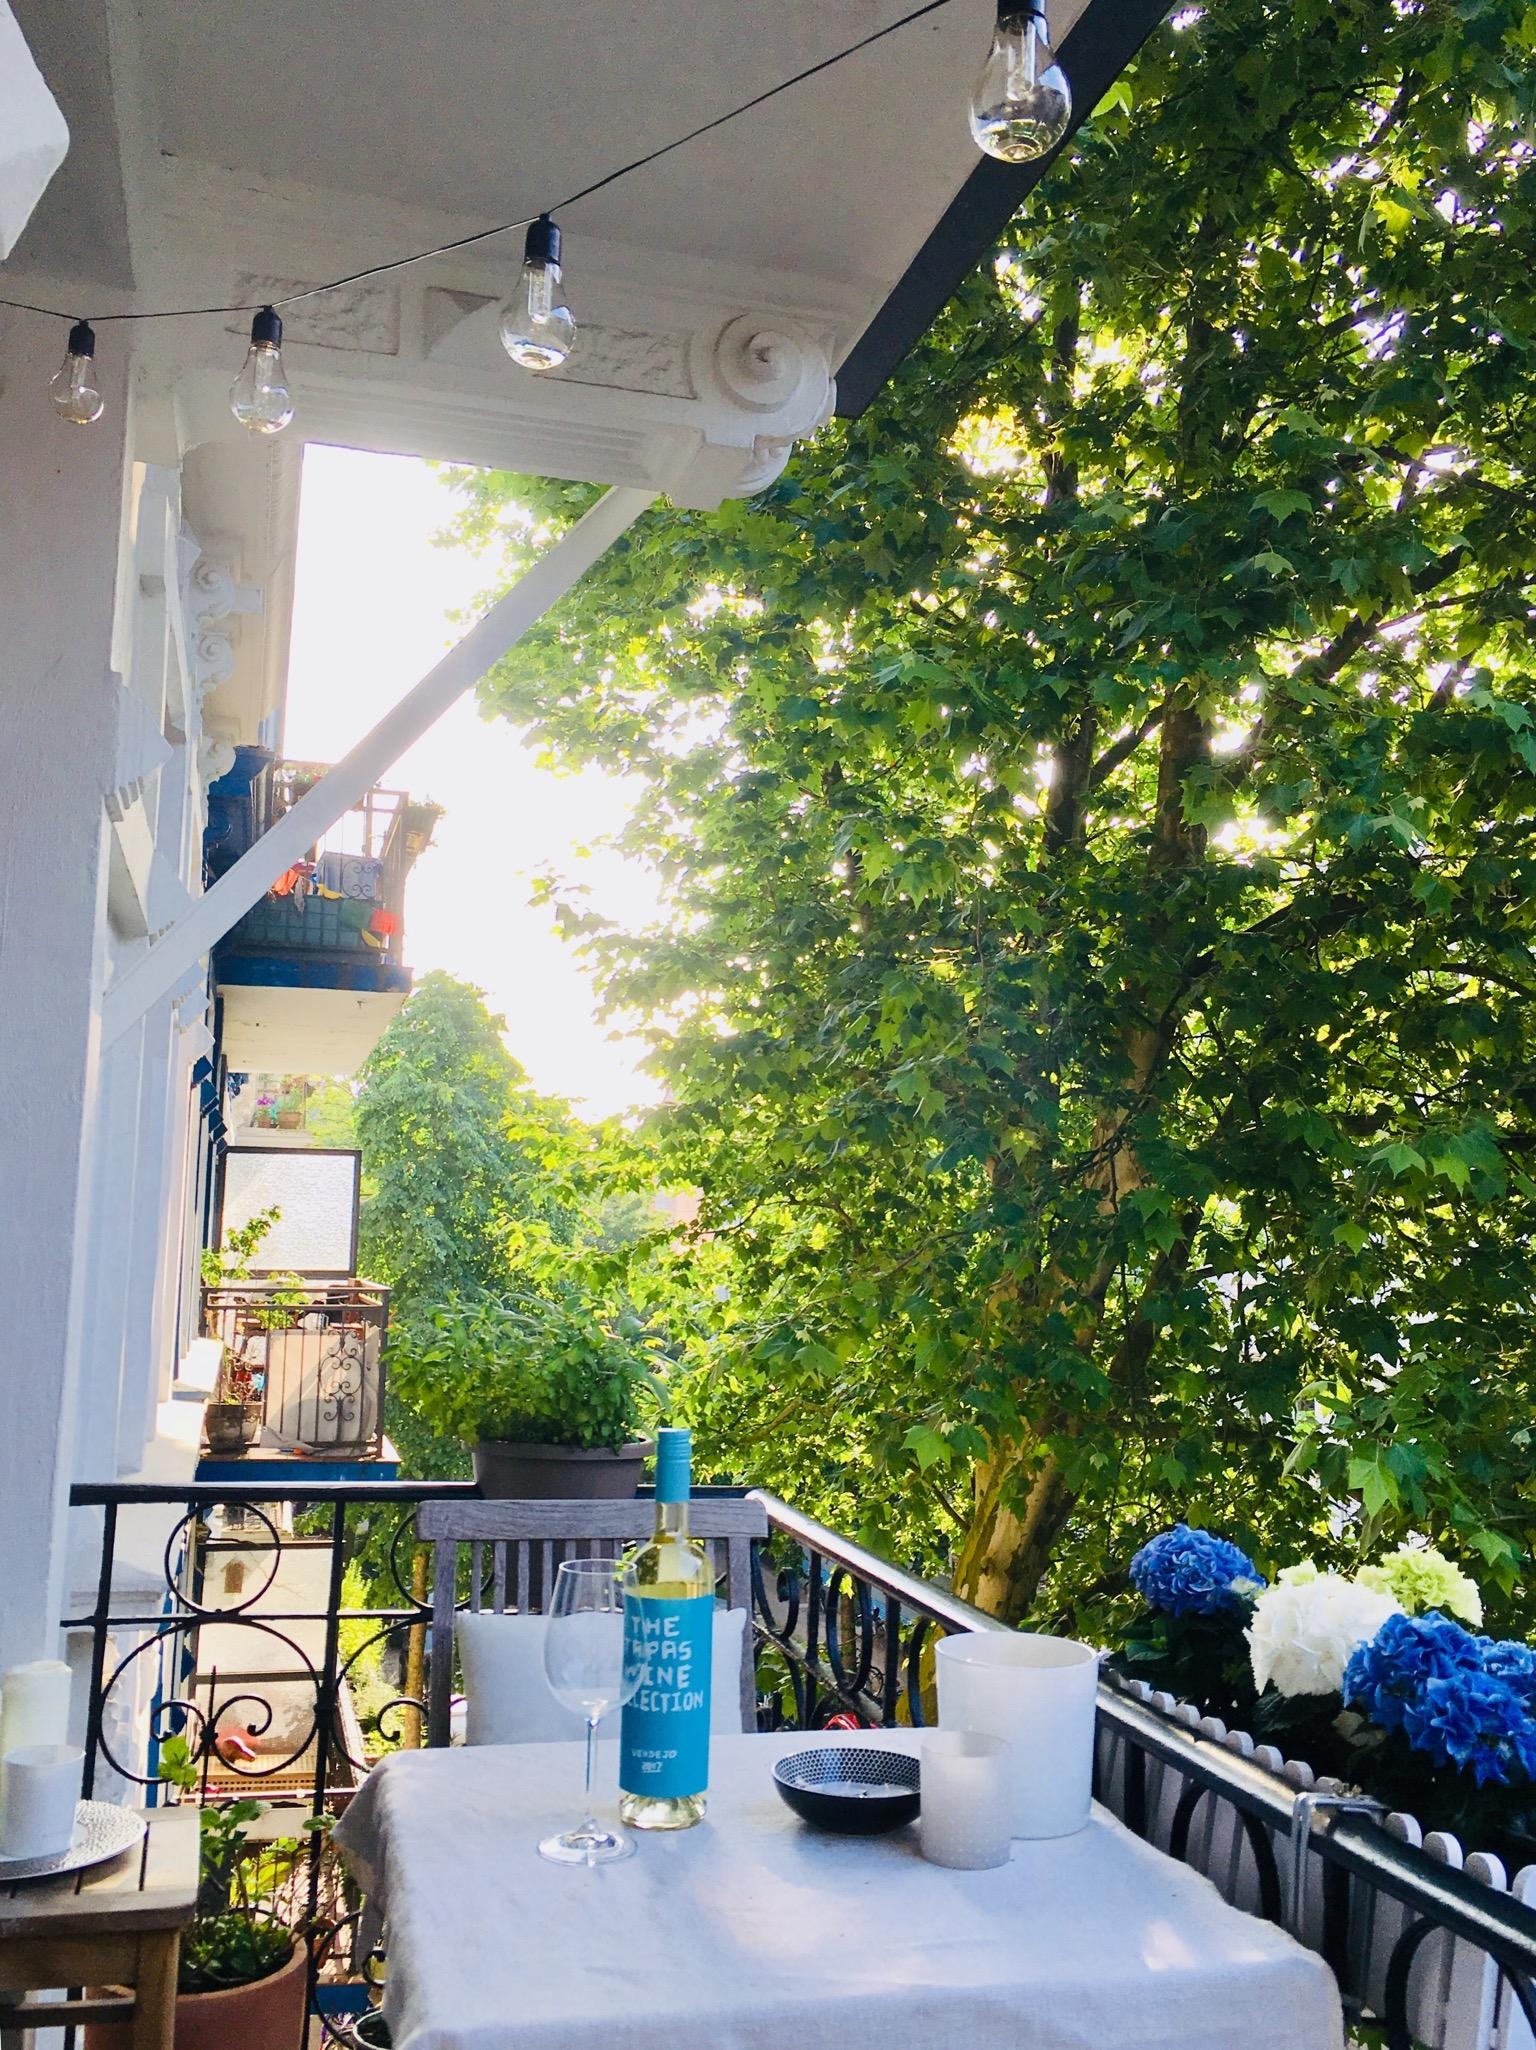 Hach, ist das ein schöner Frühsommer 💙 #hortensienwoche 
#balkonien #sommer #hh